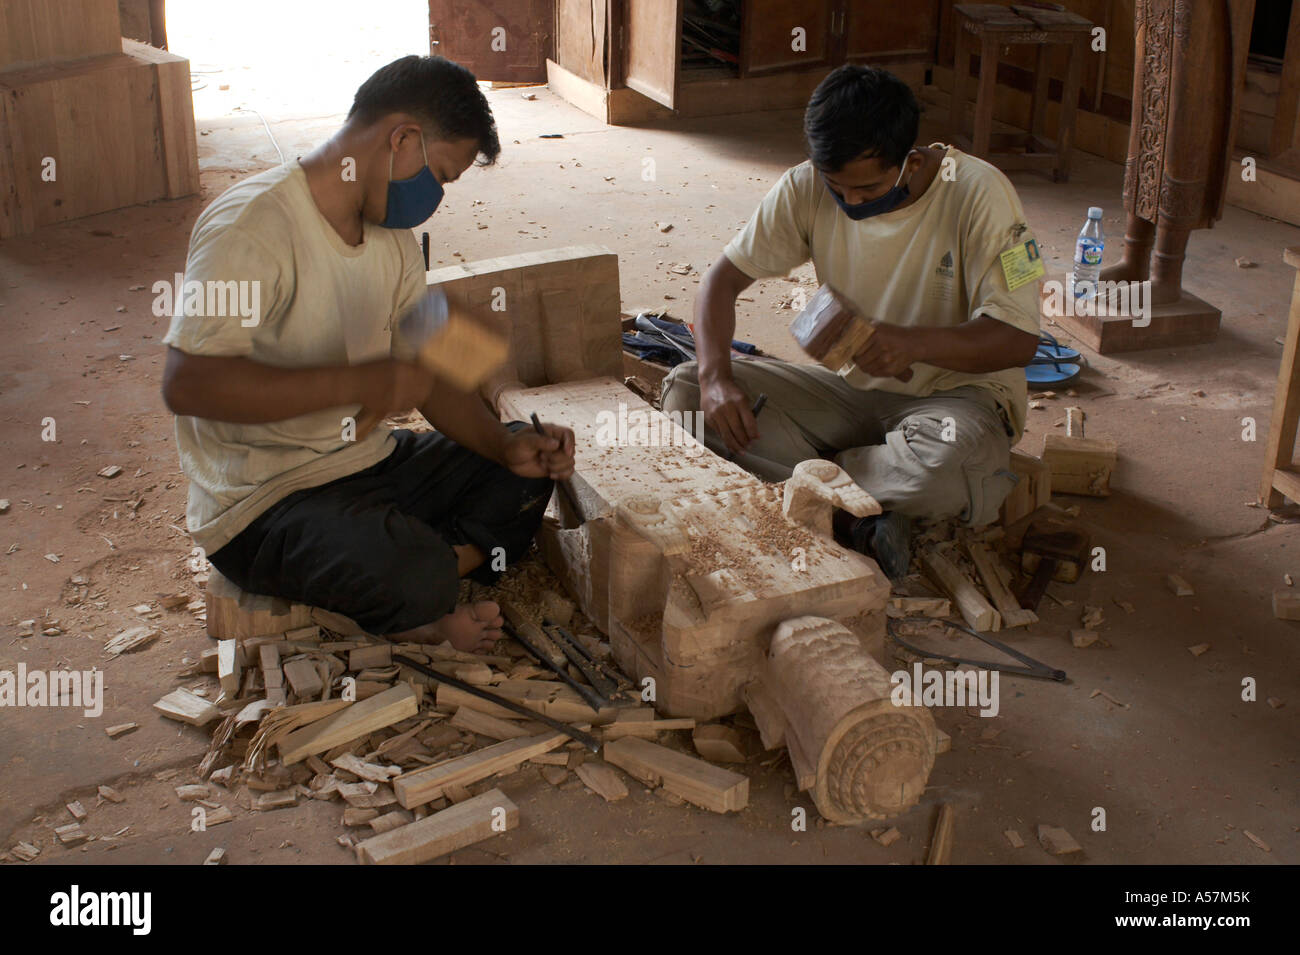 Los jóvenes aprendices de artesanos de Angkor, Artes y Artesanías, Camboya Foto de stock